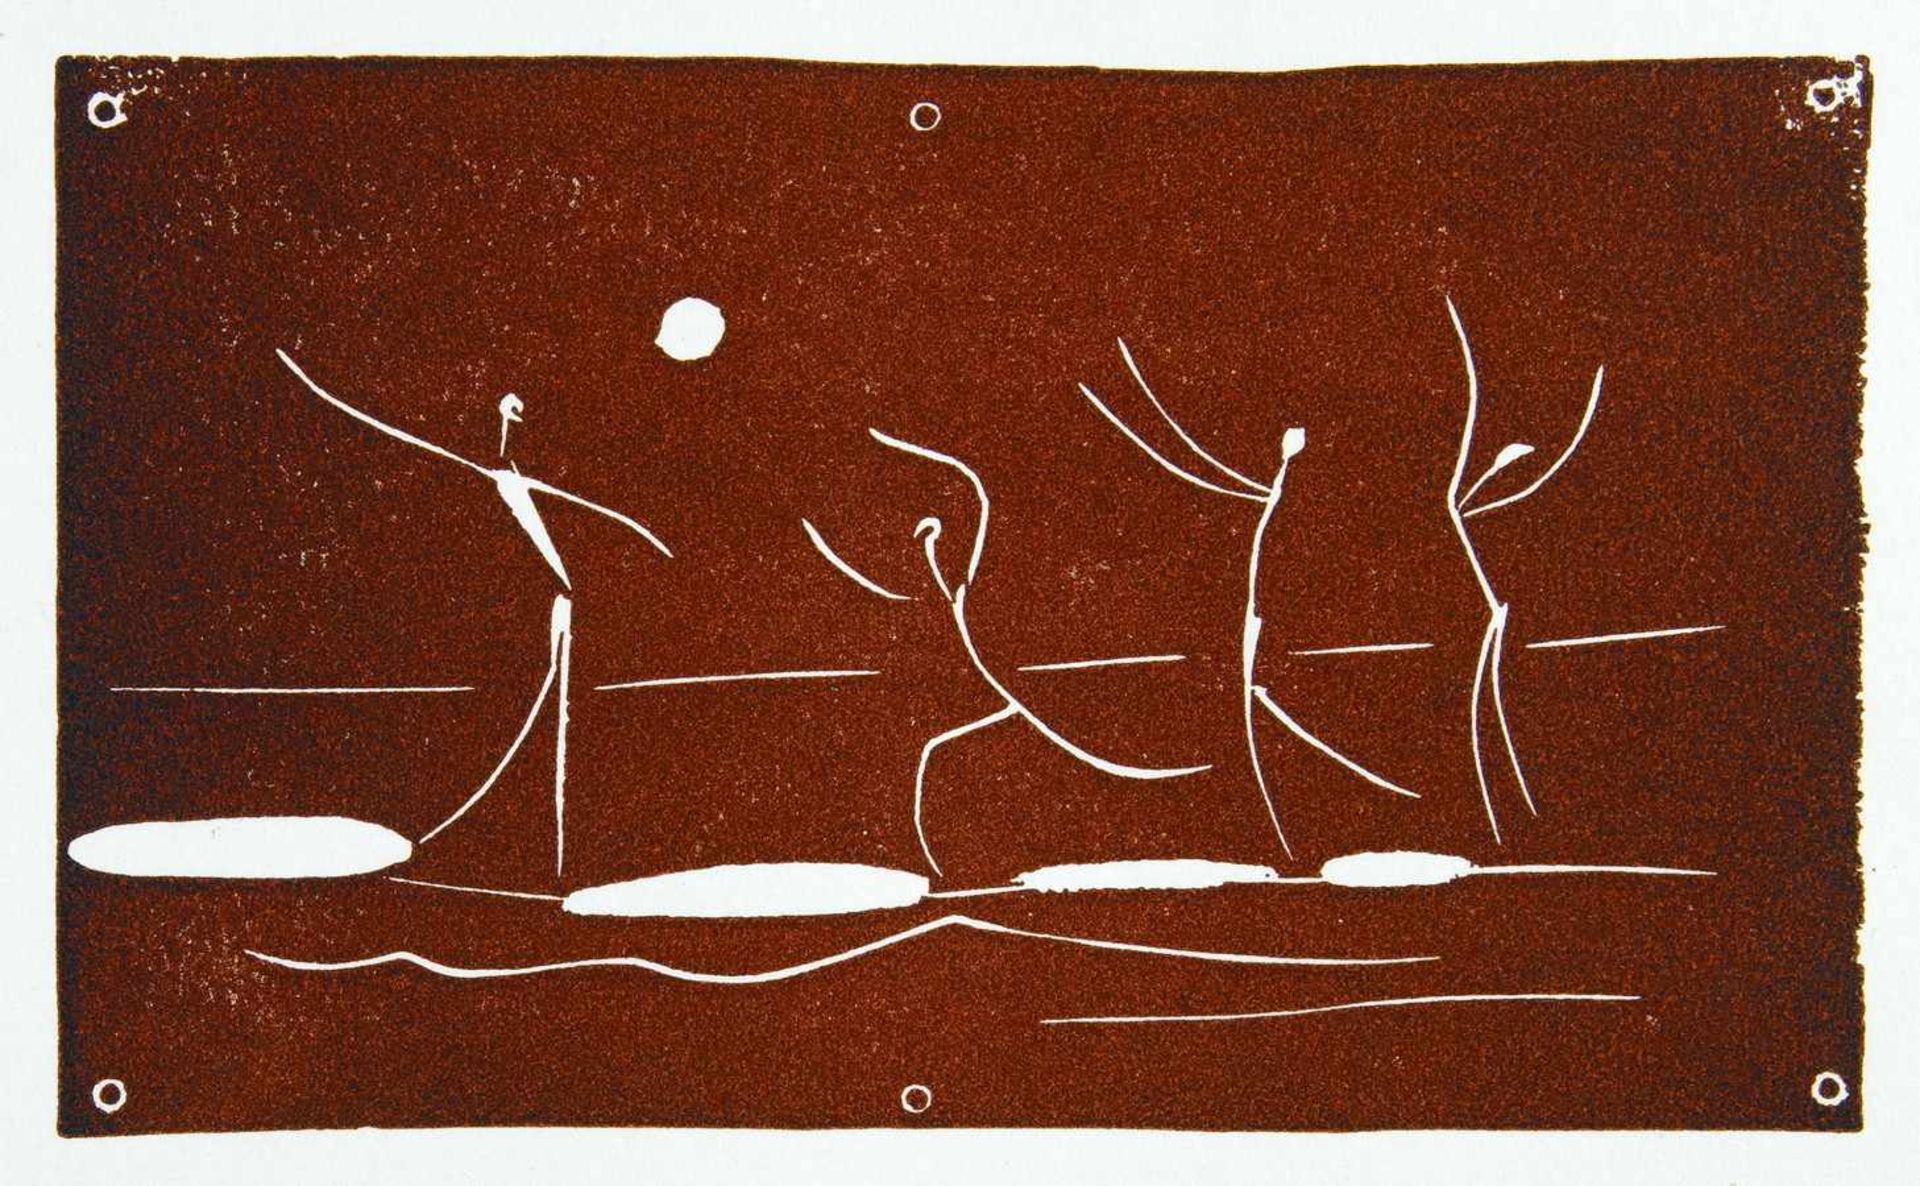 Pablo Picasso. Jeu de ballon sur une plage. Farbiger Linolschnitt. 1957. 8,0 : 13,0 cm (23,8 : 15,